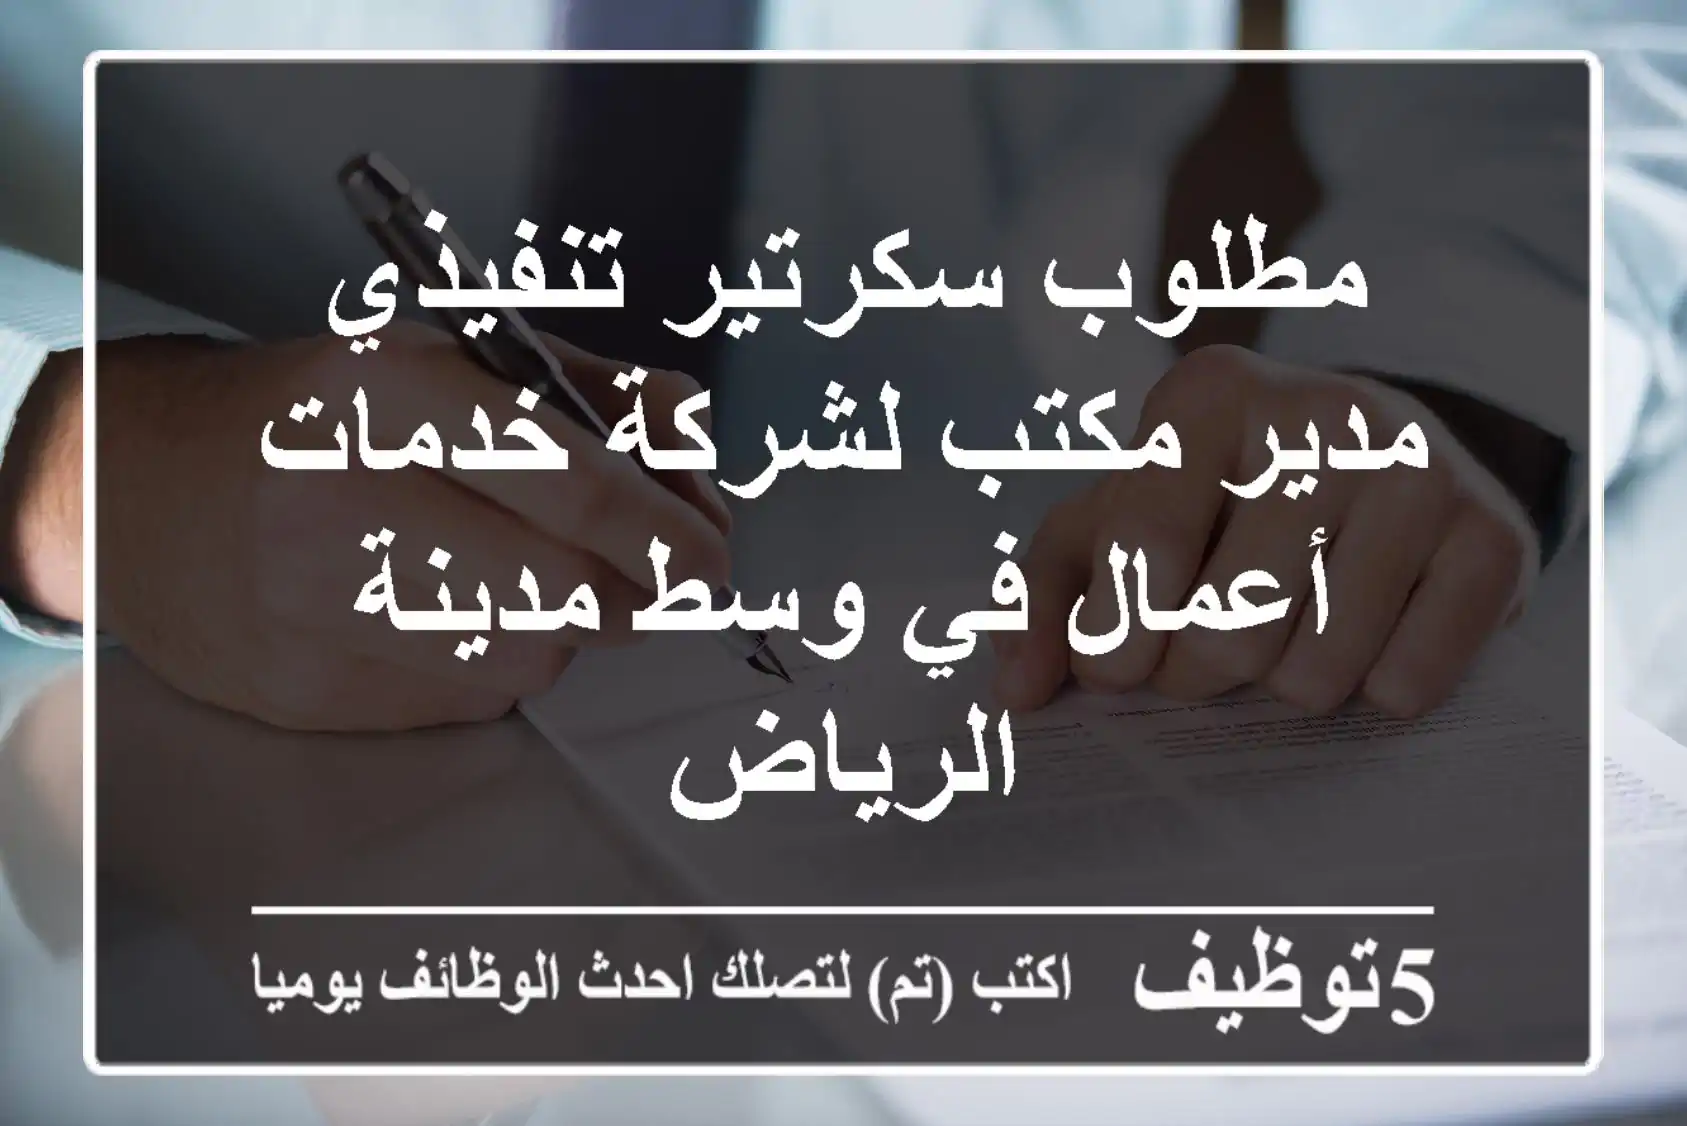 مطلوب سكرتير تنفيذي مدير مكتب لشركة خدمات أعمال في وسط مدينة الرياض